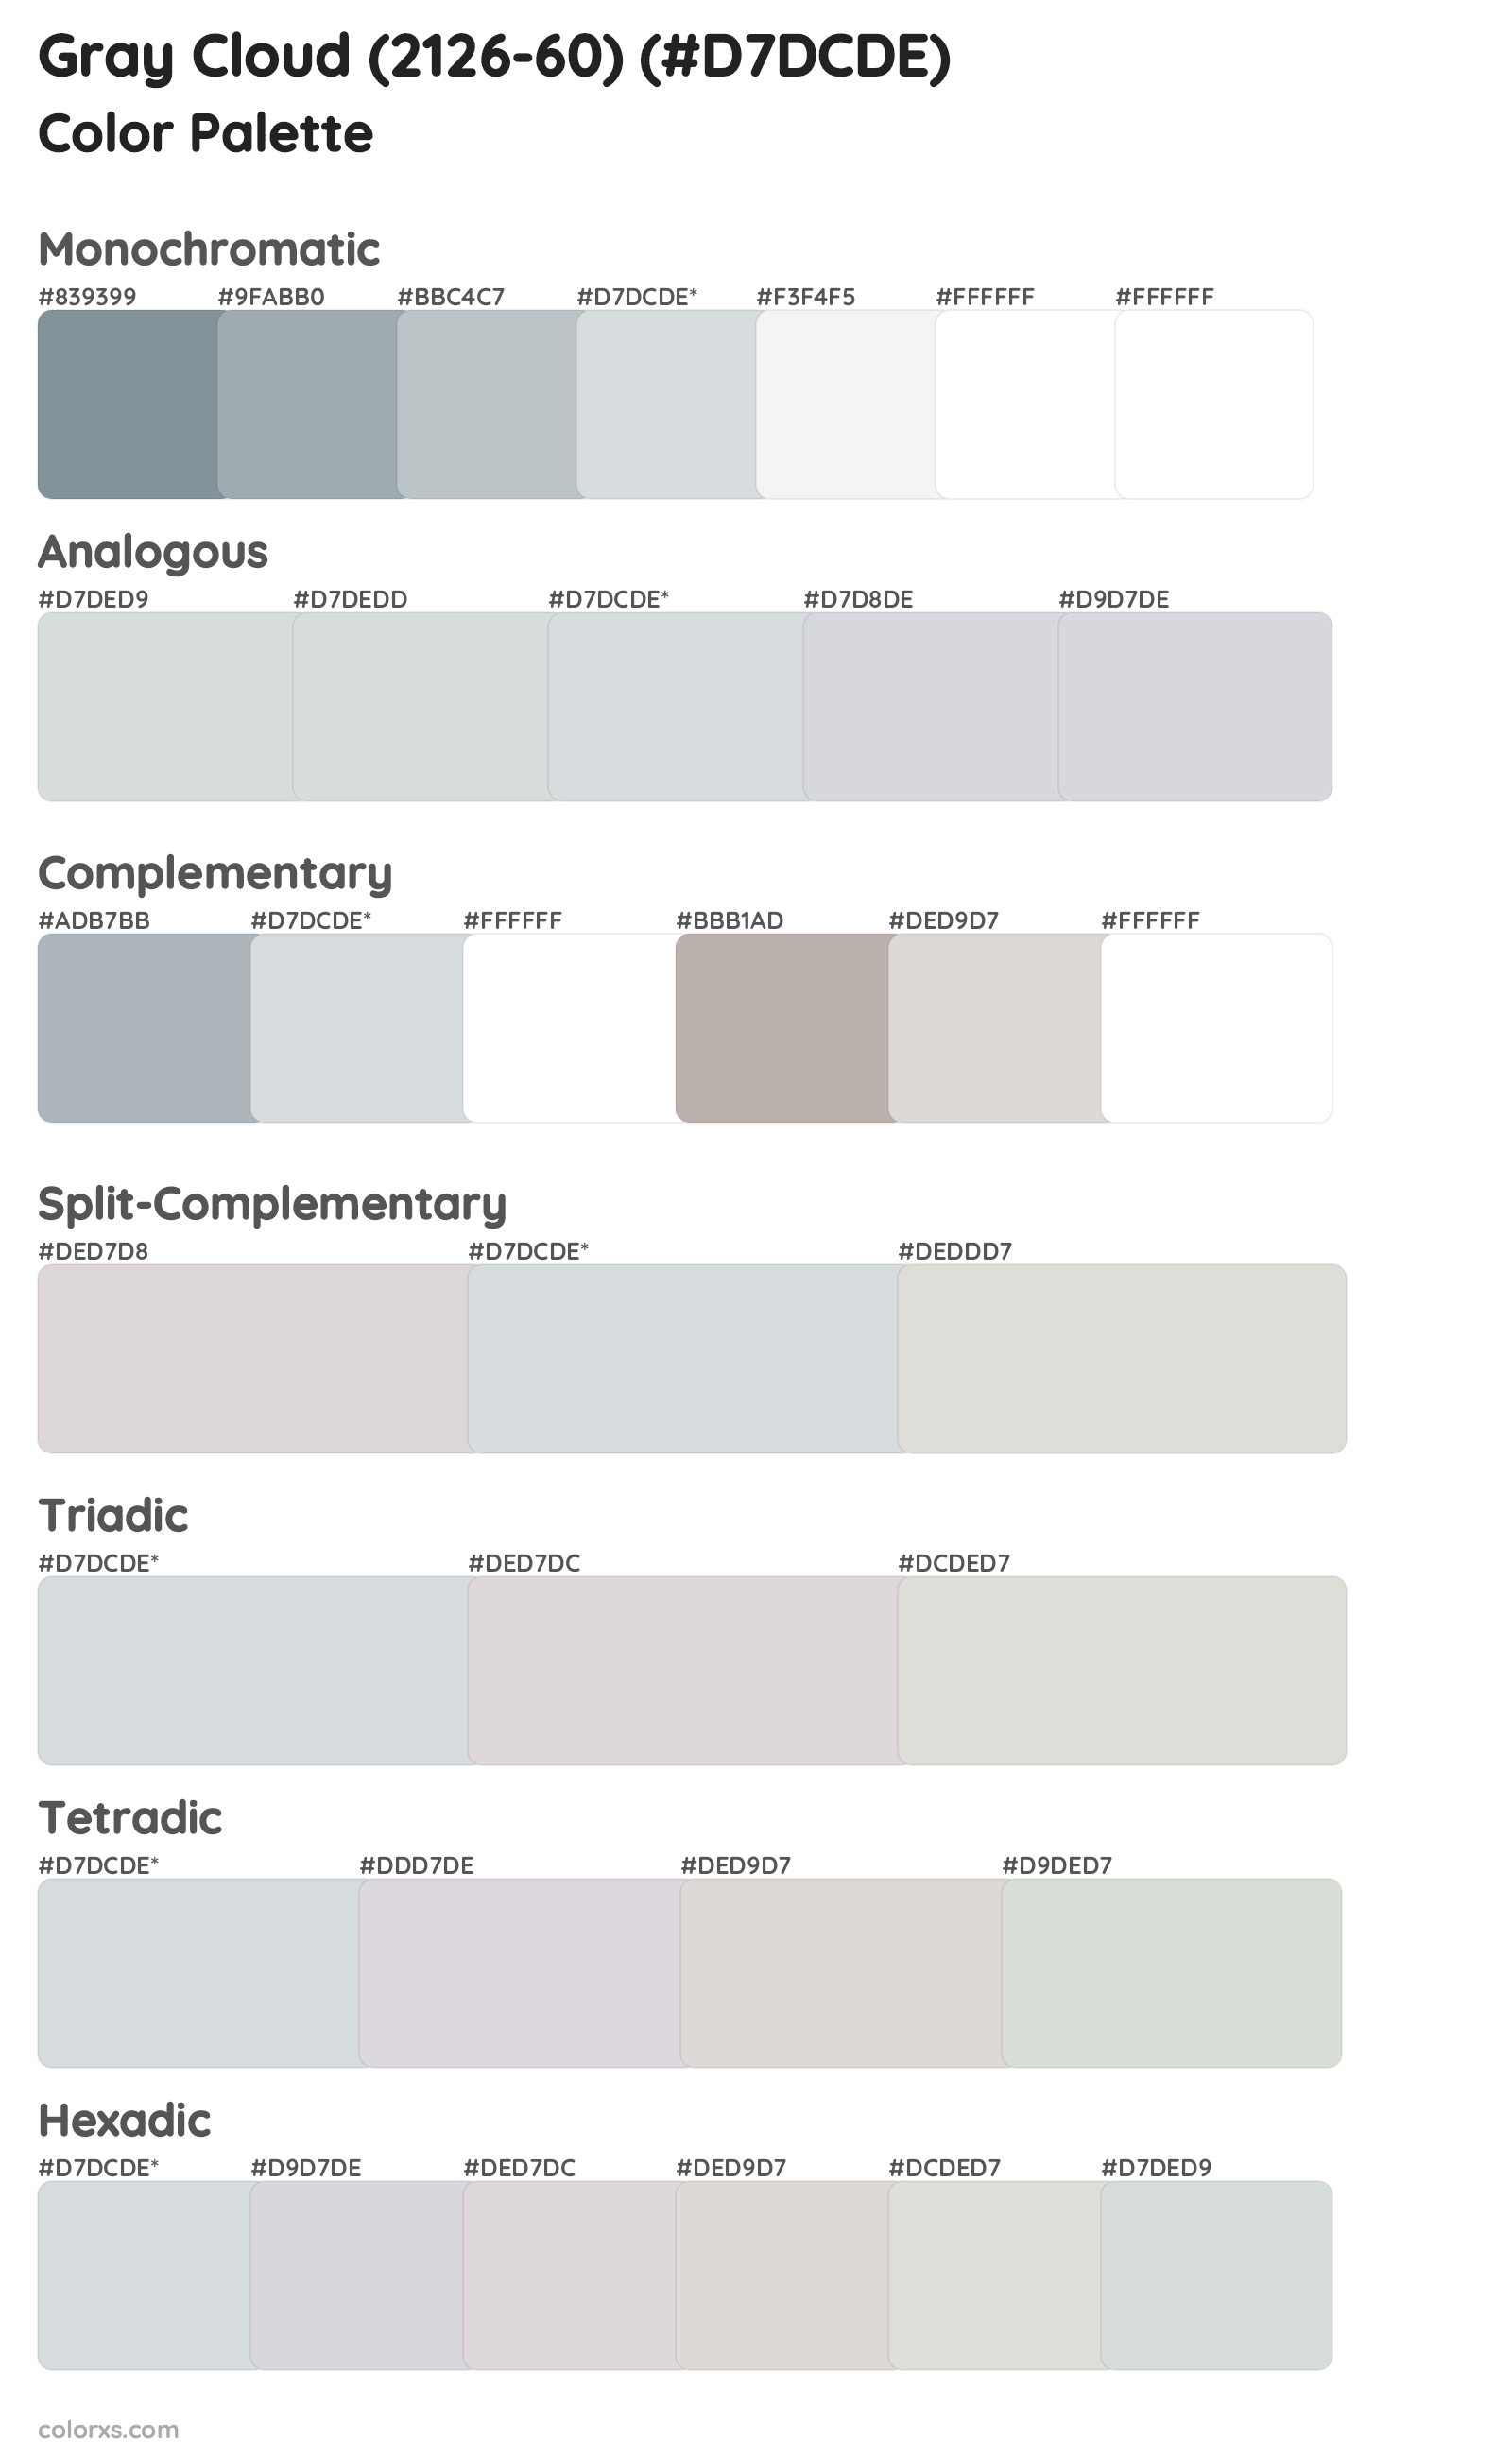 Gray Cloud (2126-60) Color Scheme Palettes